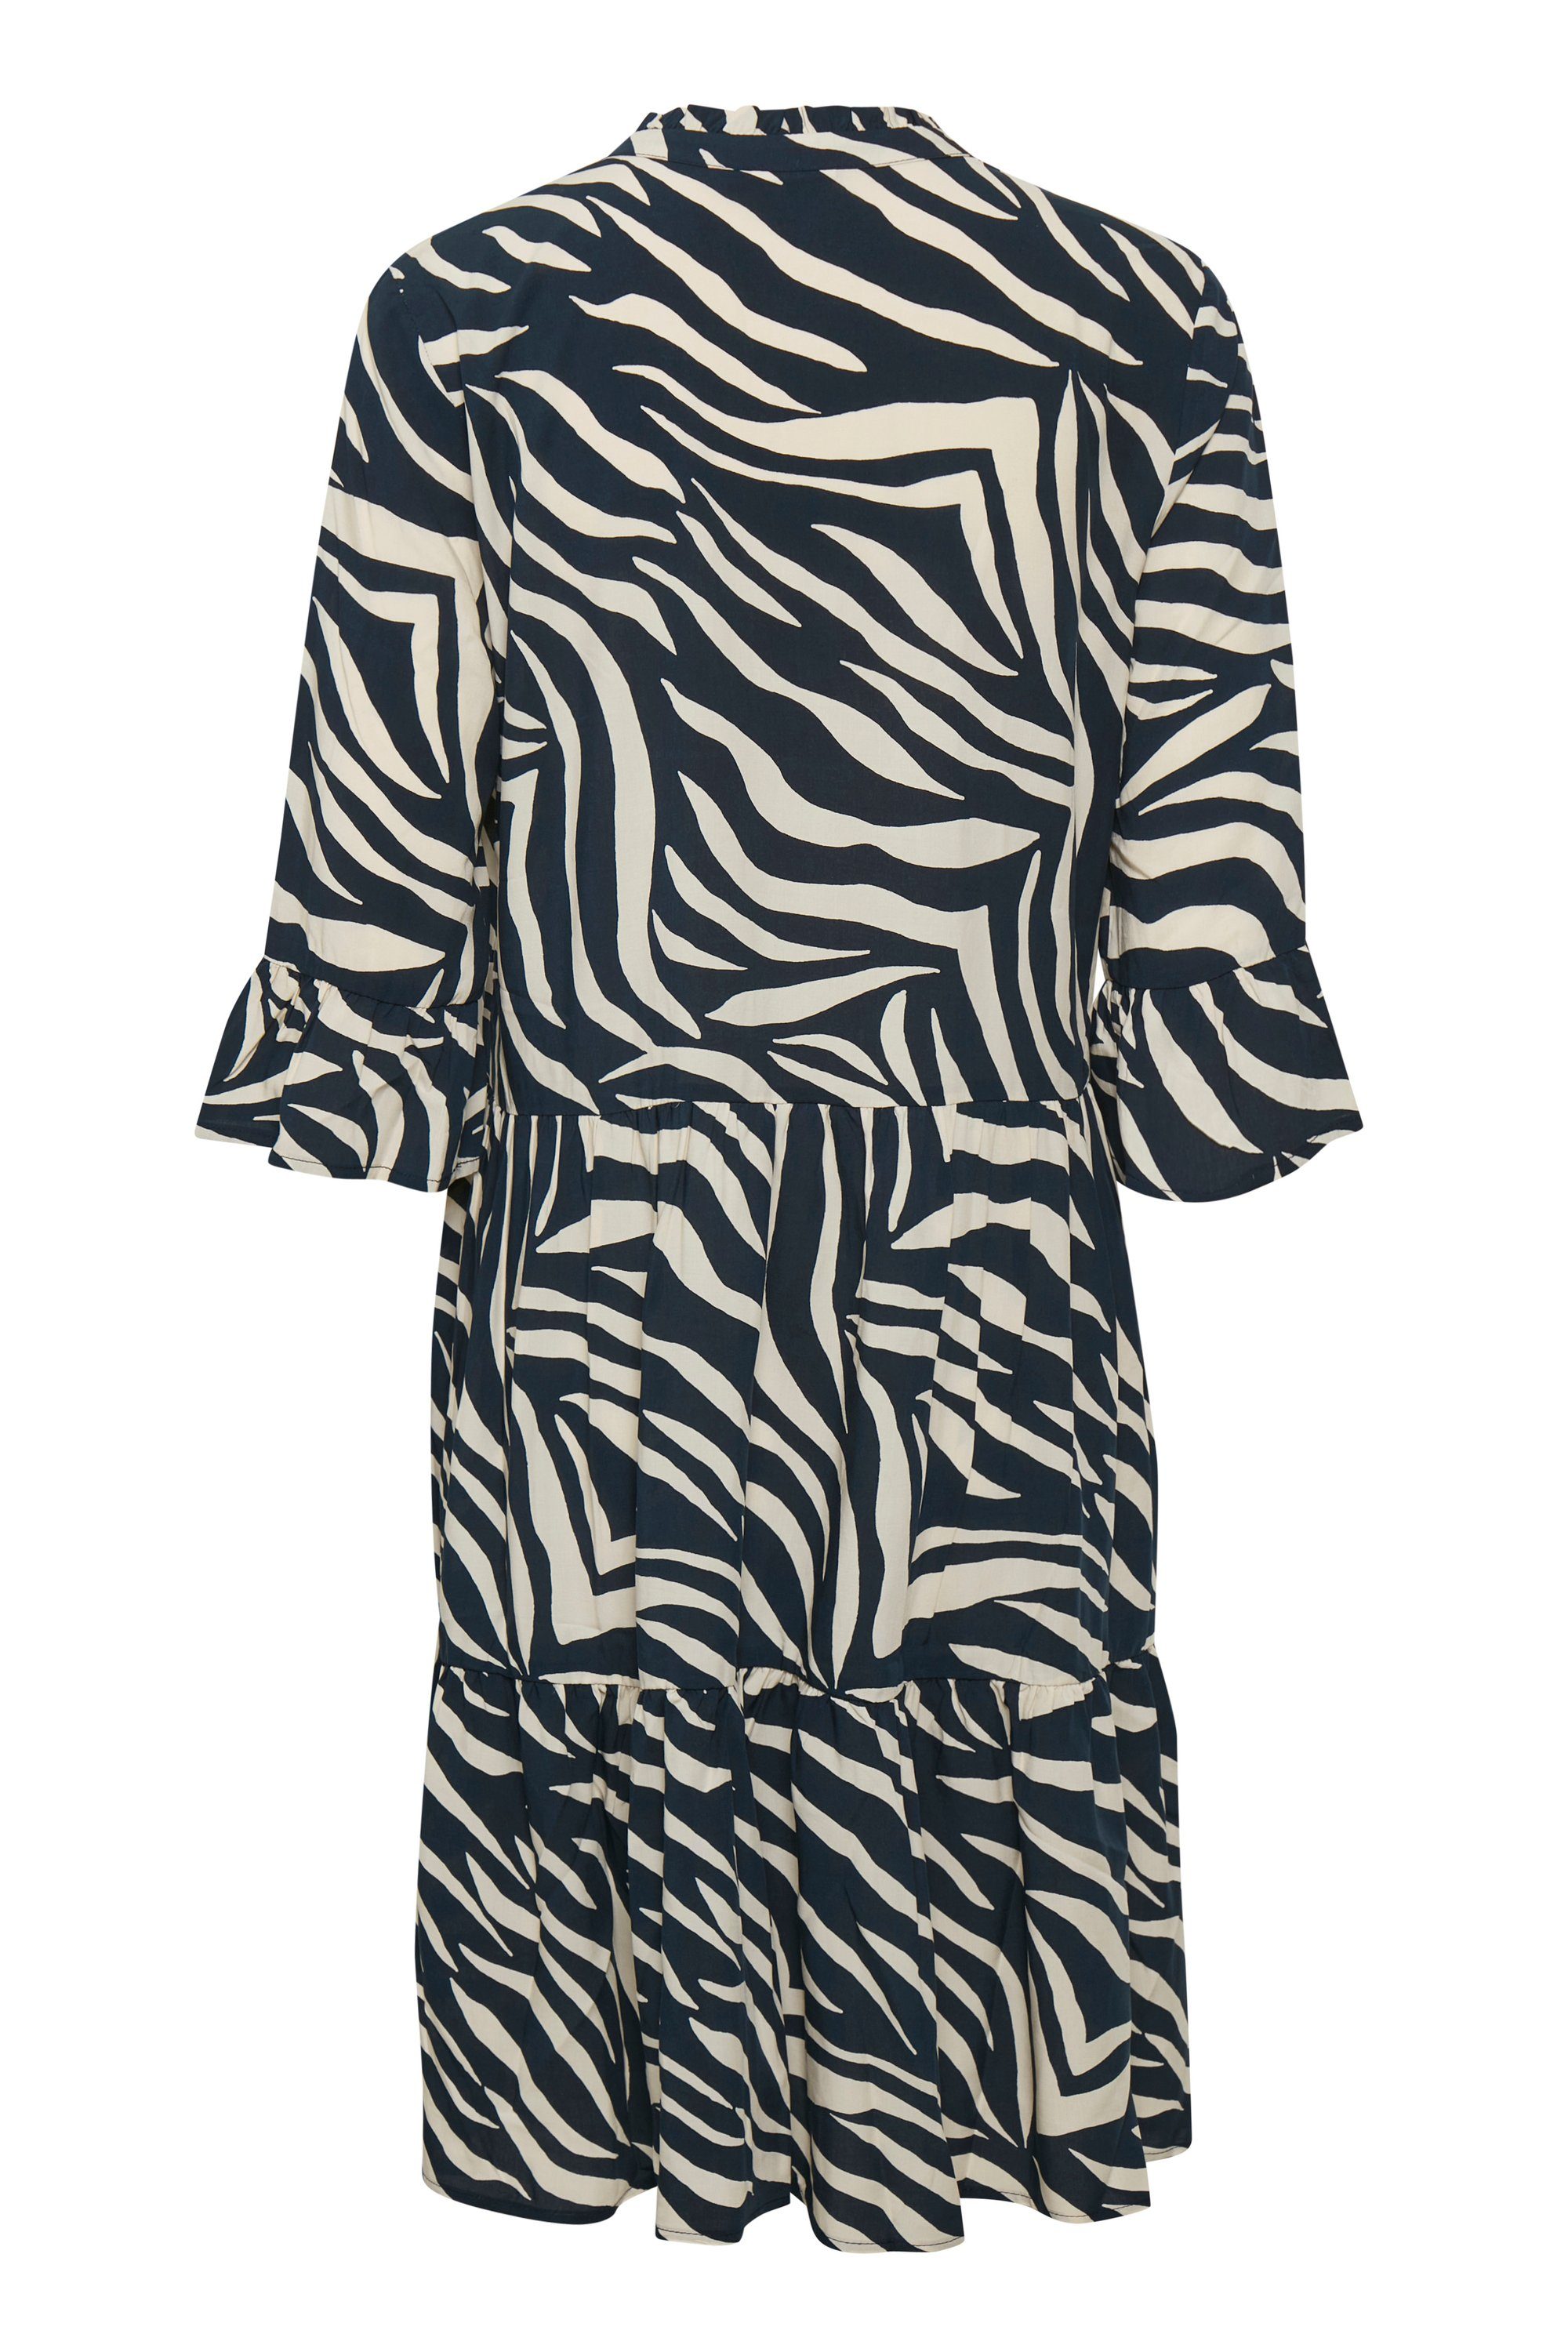 Saint Tropez Jerseykleid EdaSZ Dress Zebra Skin Total Eclipse